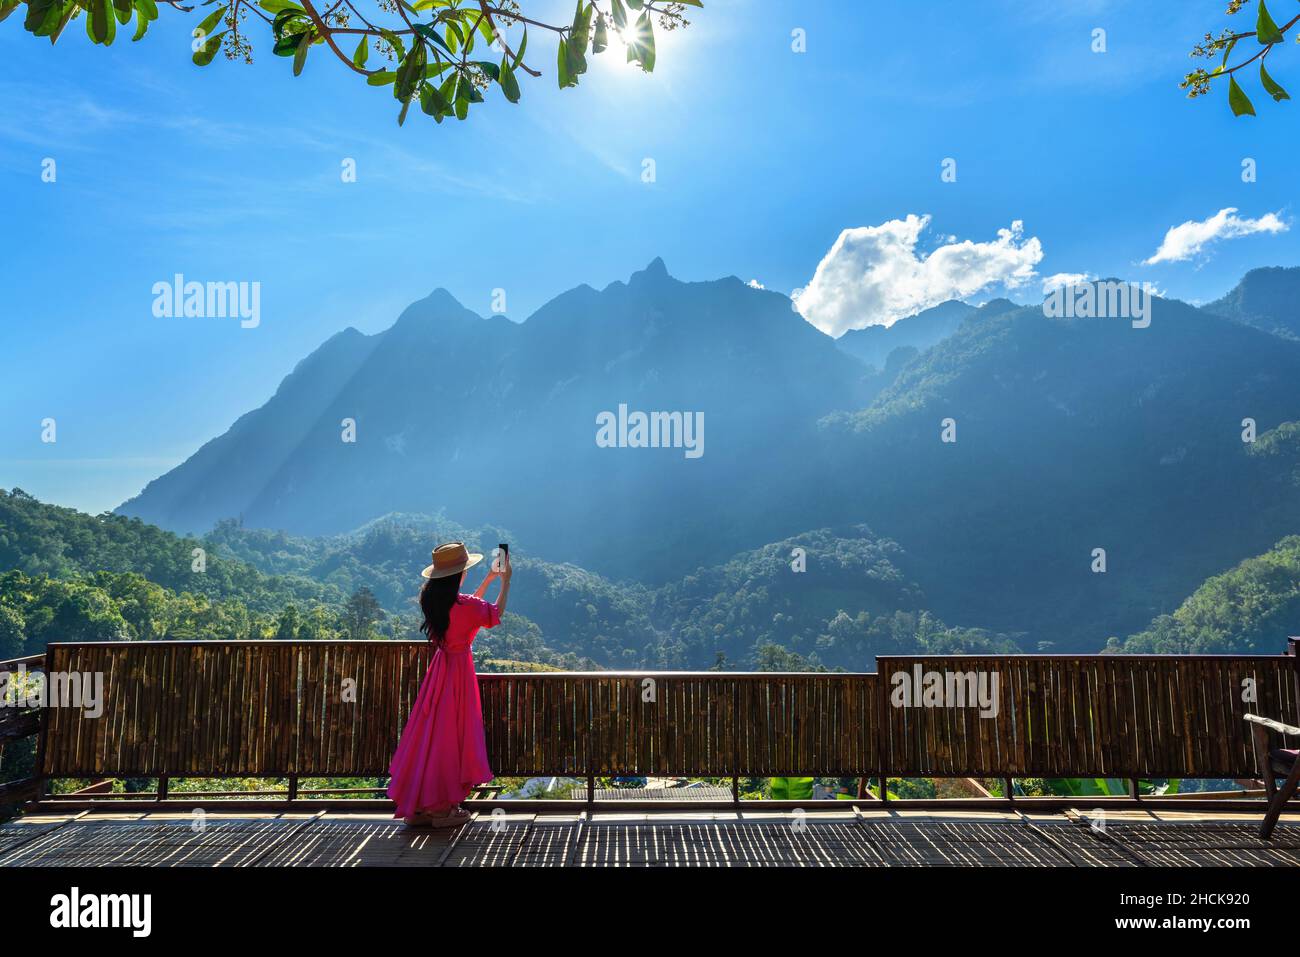 Femme touriste prenant une photo des montagnes Doi Luang Chiang Dao, Chiang mai, Thaïlande. Banque D'Images